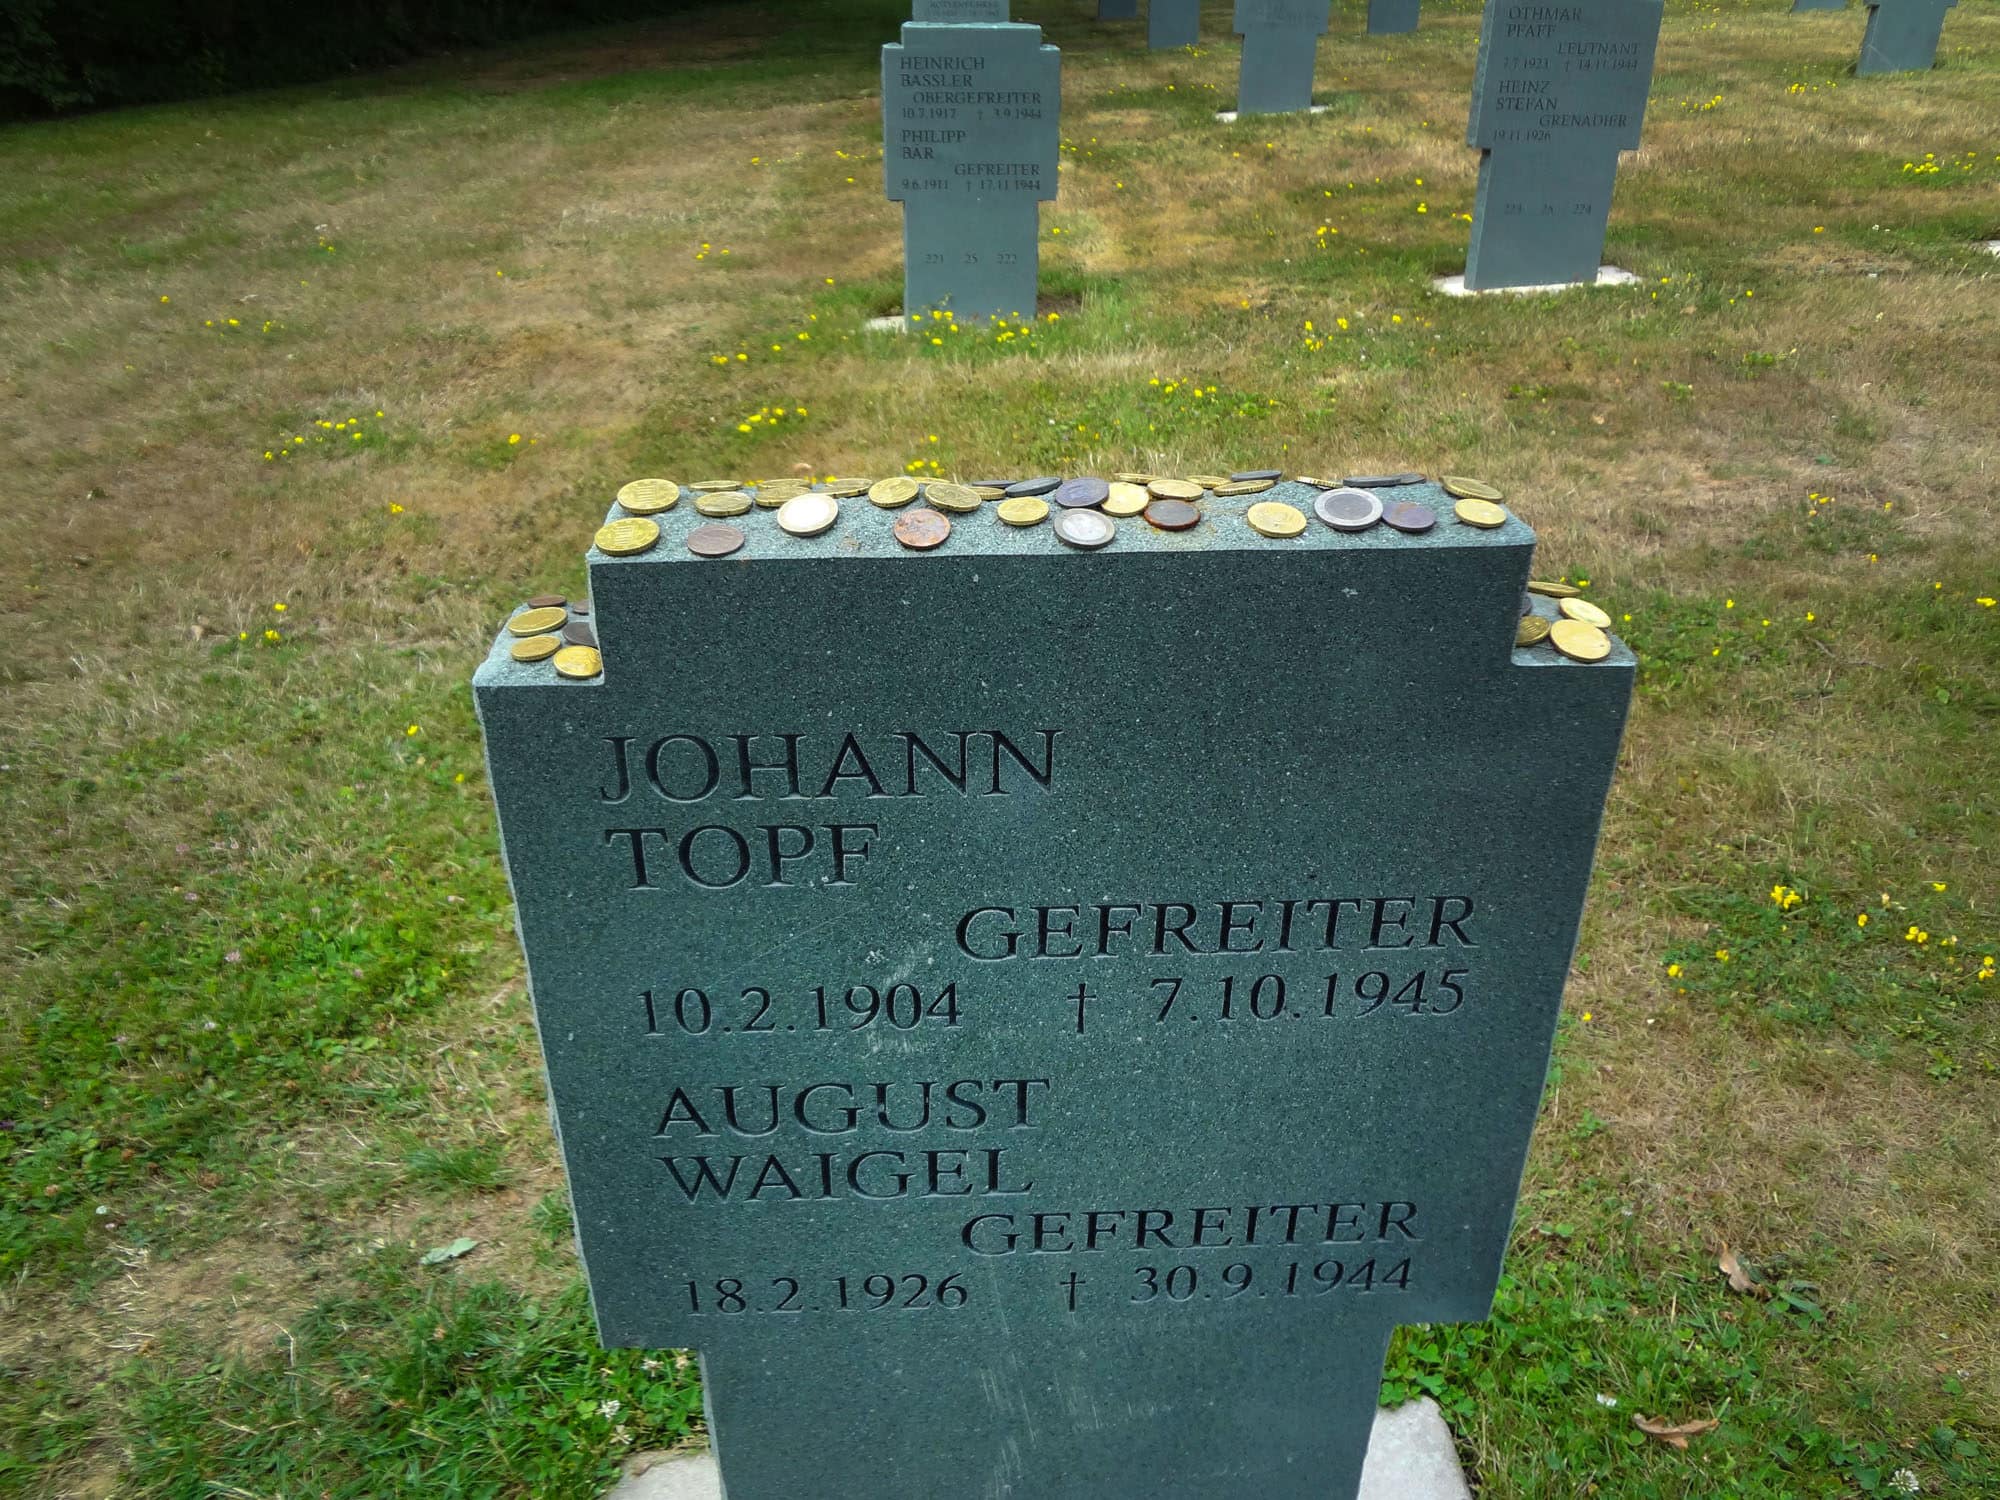 Des pièces de monnaie rendent hommage à Theo Waigel, père de l'euro en Allemagne, dont le frère est enterré à Niederbronn. (Photo : Fabien Nouvène)